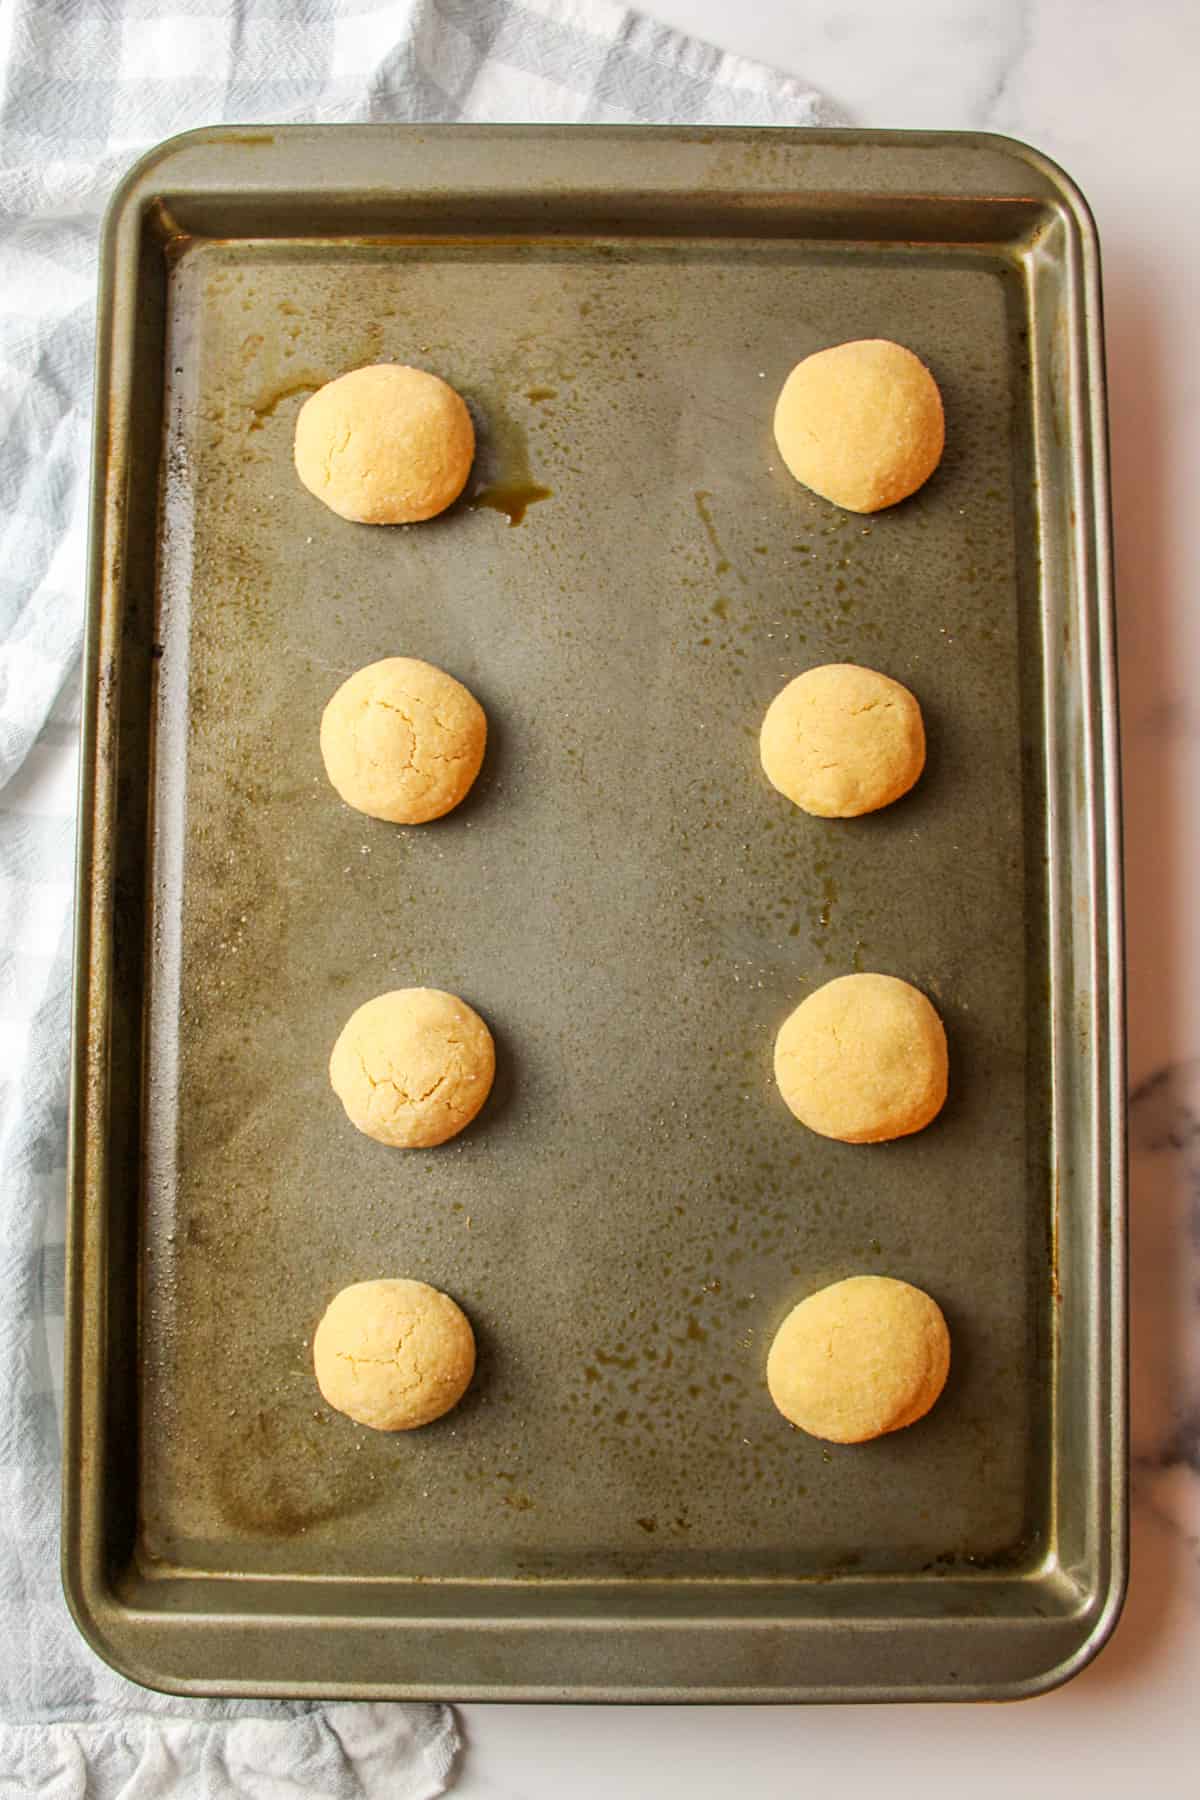 baked peanut butter dough balls on a baking sheet.